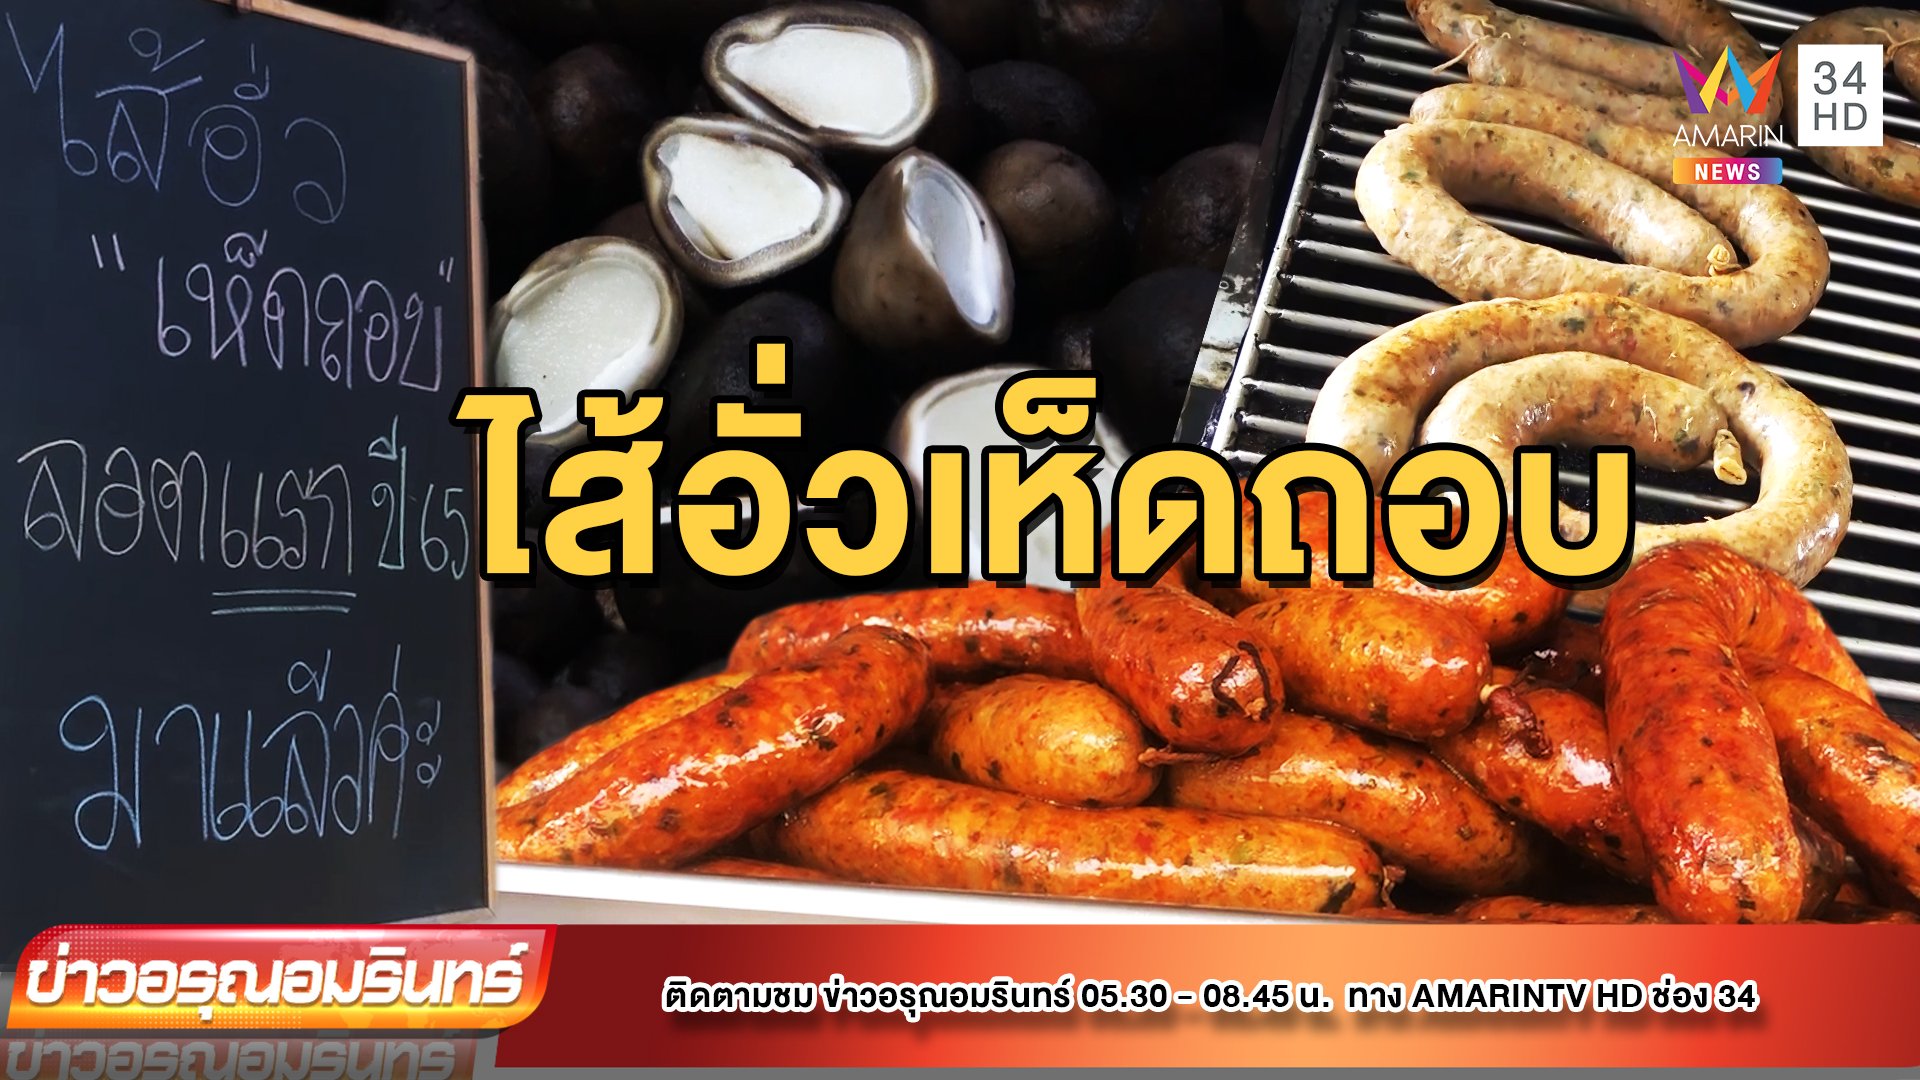 ประเดิมต้นฤดู! ชวนชิม “ไส้อั่วเห็ดถอบ” ของดีทำขายปีละครั้ง | ข่าวอรุณอมรินทร์ | 19 พ.ค. 65 | AMARIN TVHD34